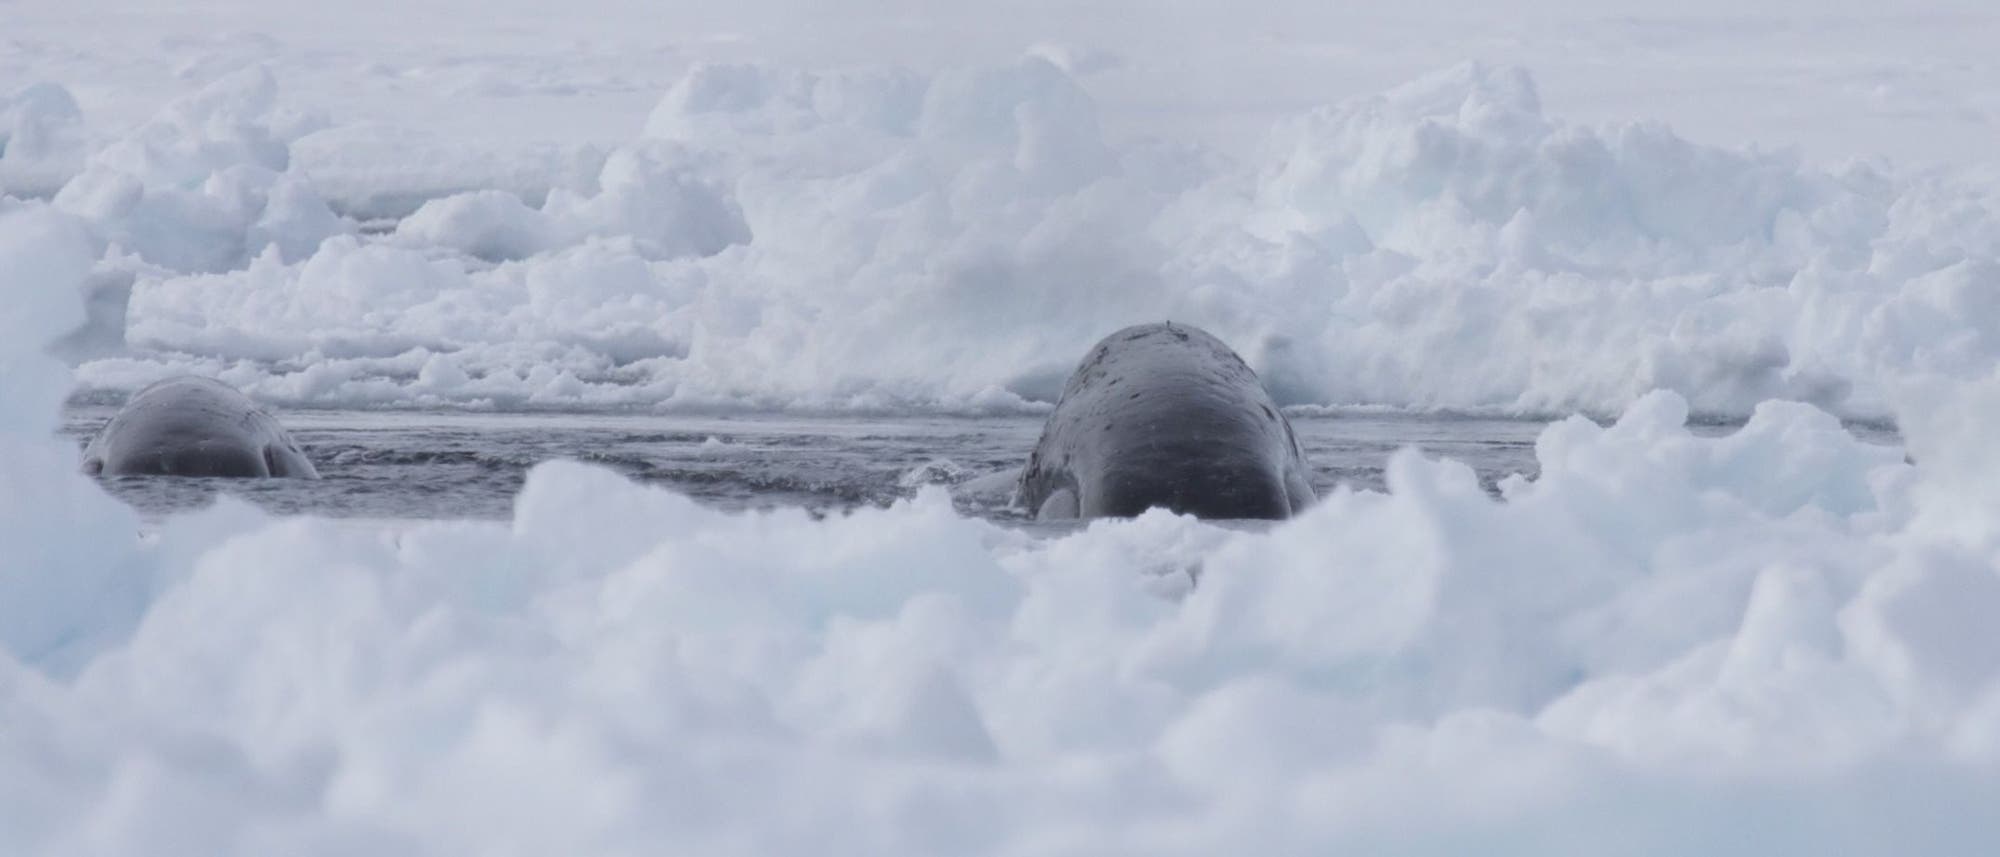 Grönlandwal an einem Eisloch